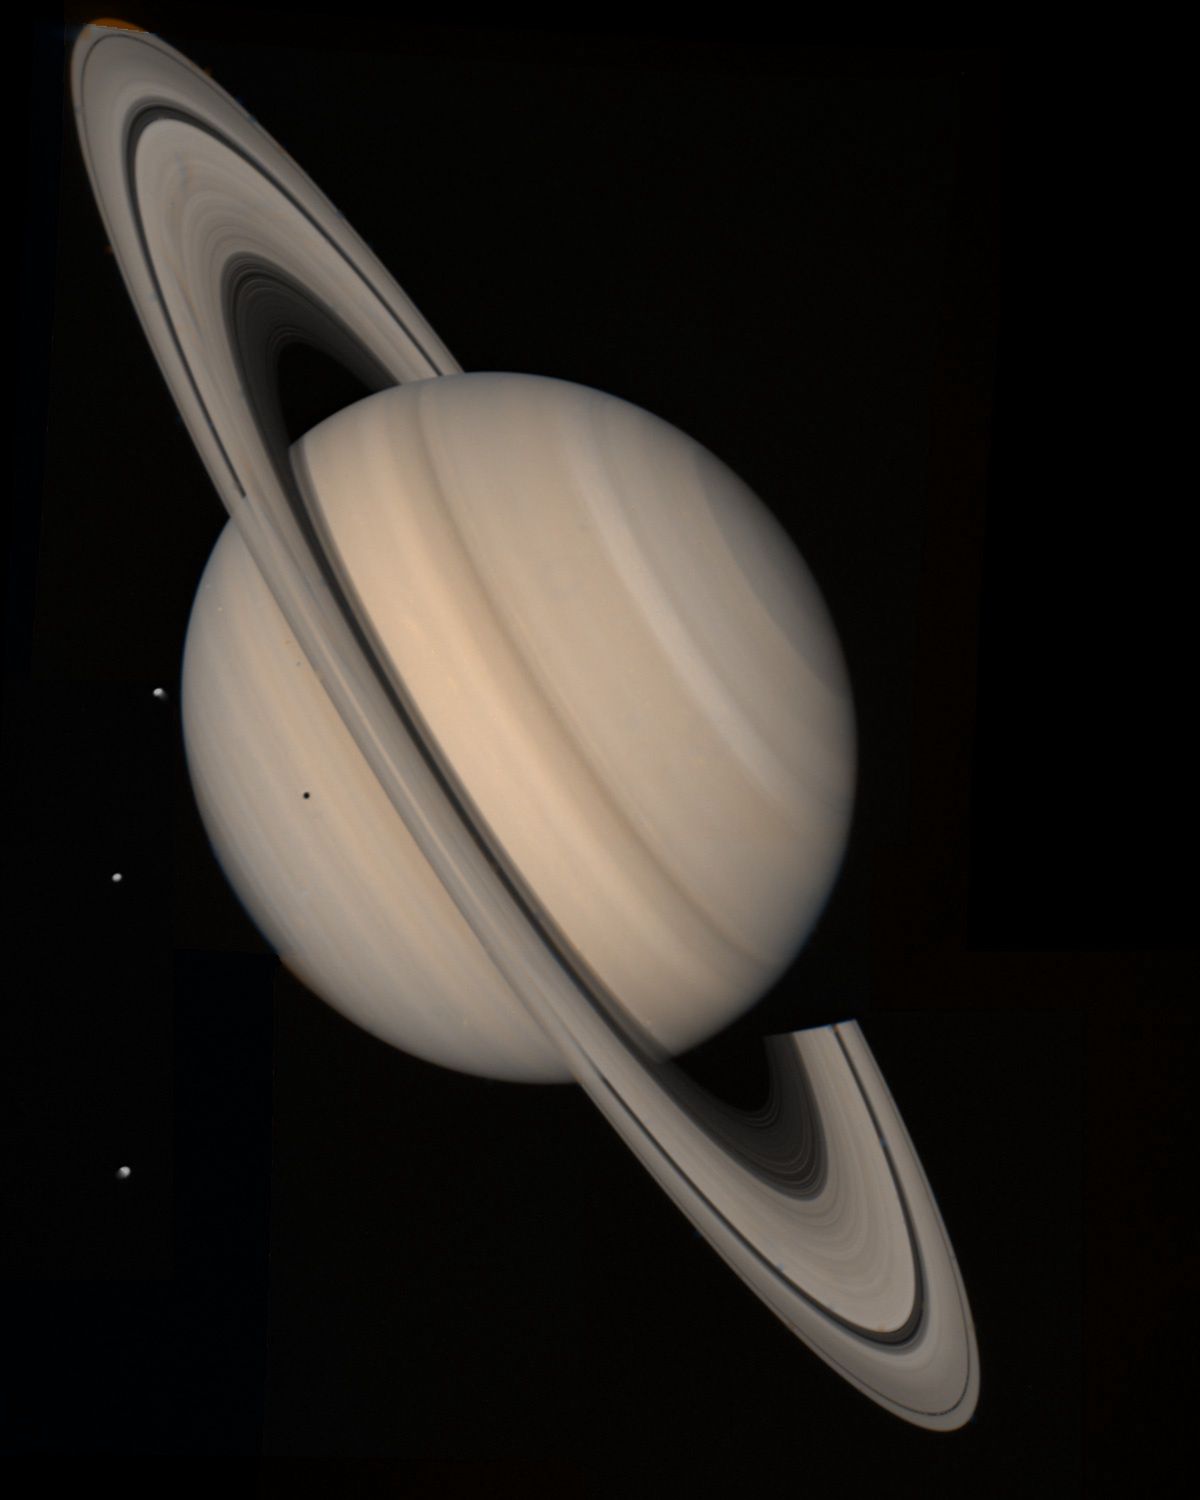 djęcie Saturna z sondy Voyager 2 wykonane 4 sierpnia 1981 roku z odległości 21 milionów kilometrów